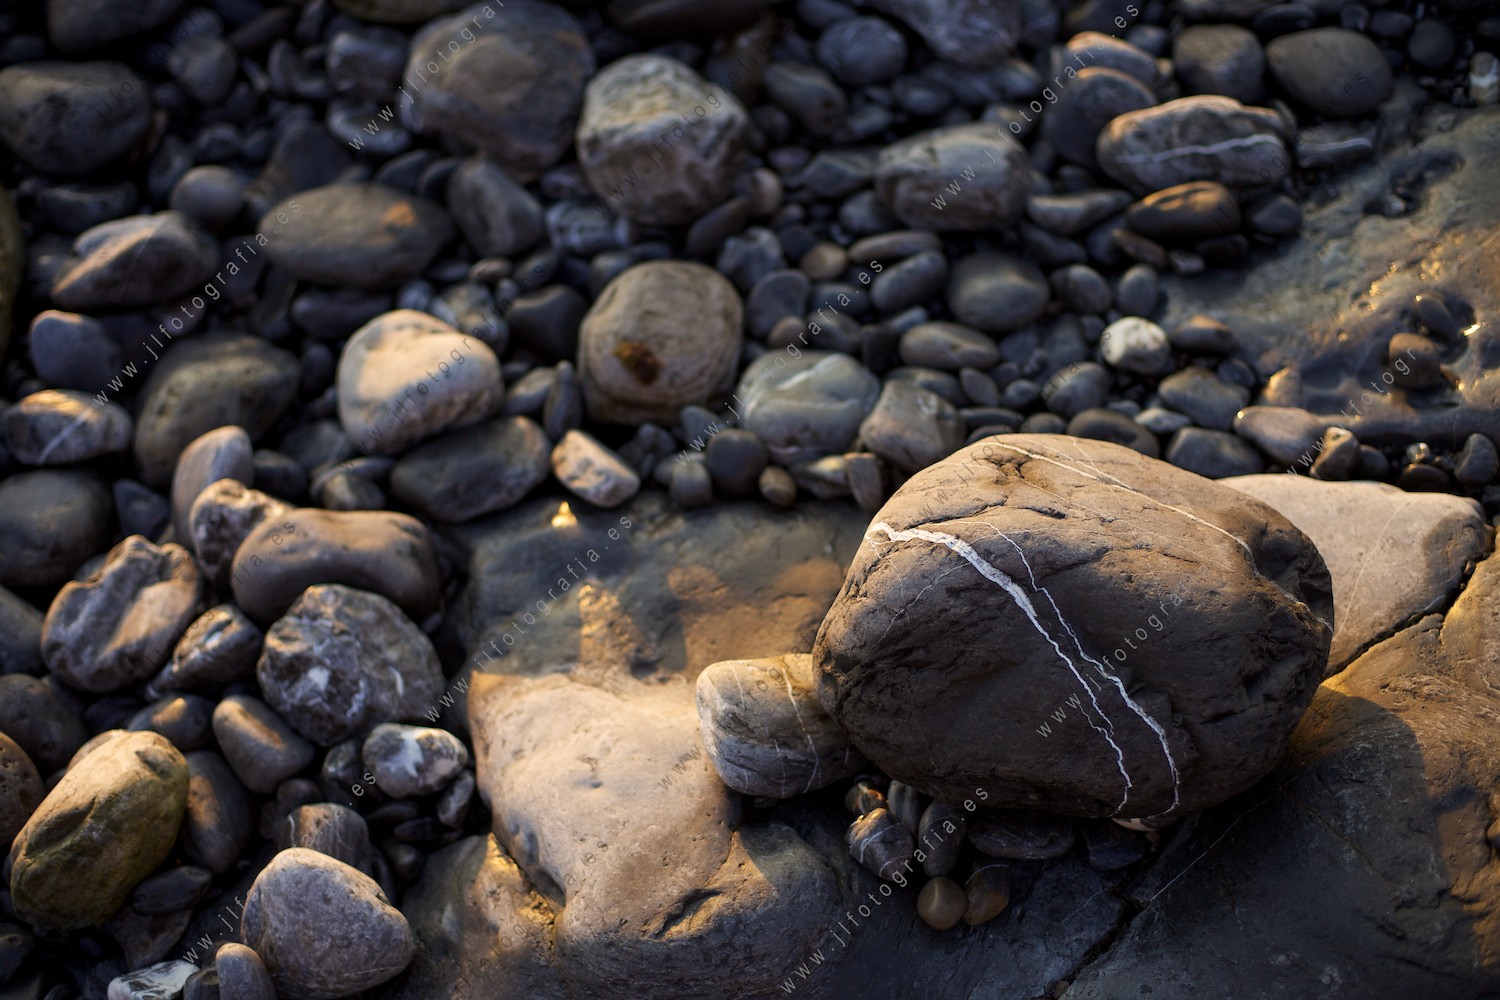 Detalle de piedras en laorilla de la playa.